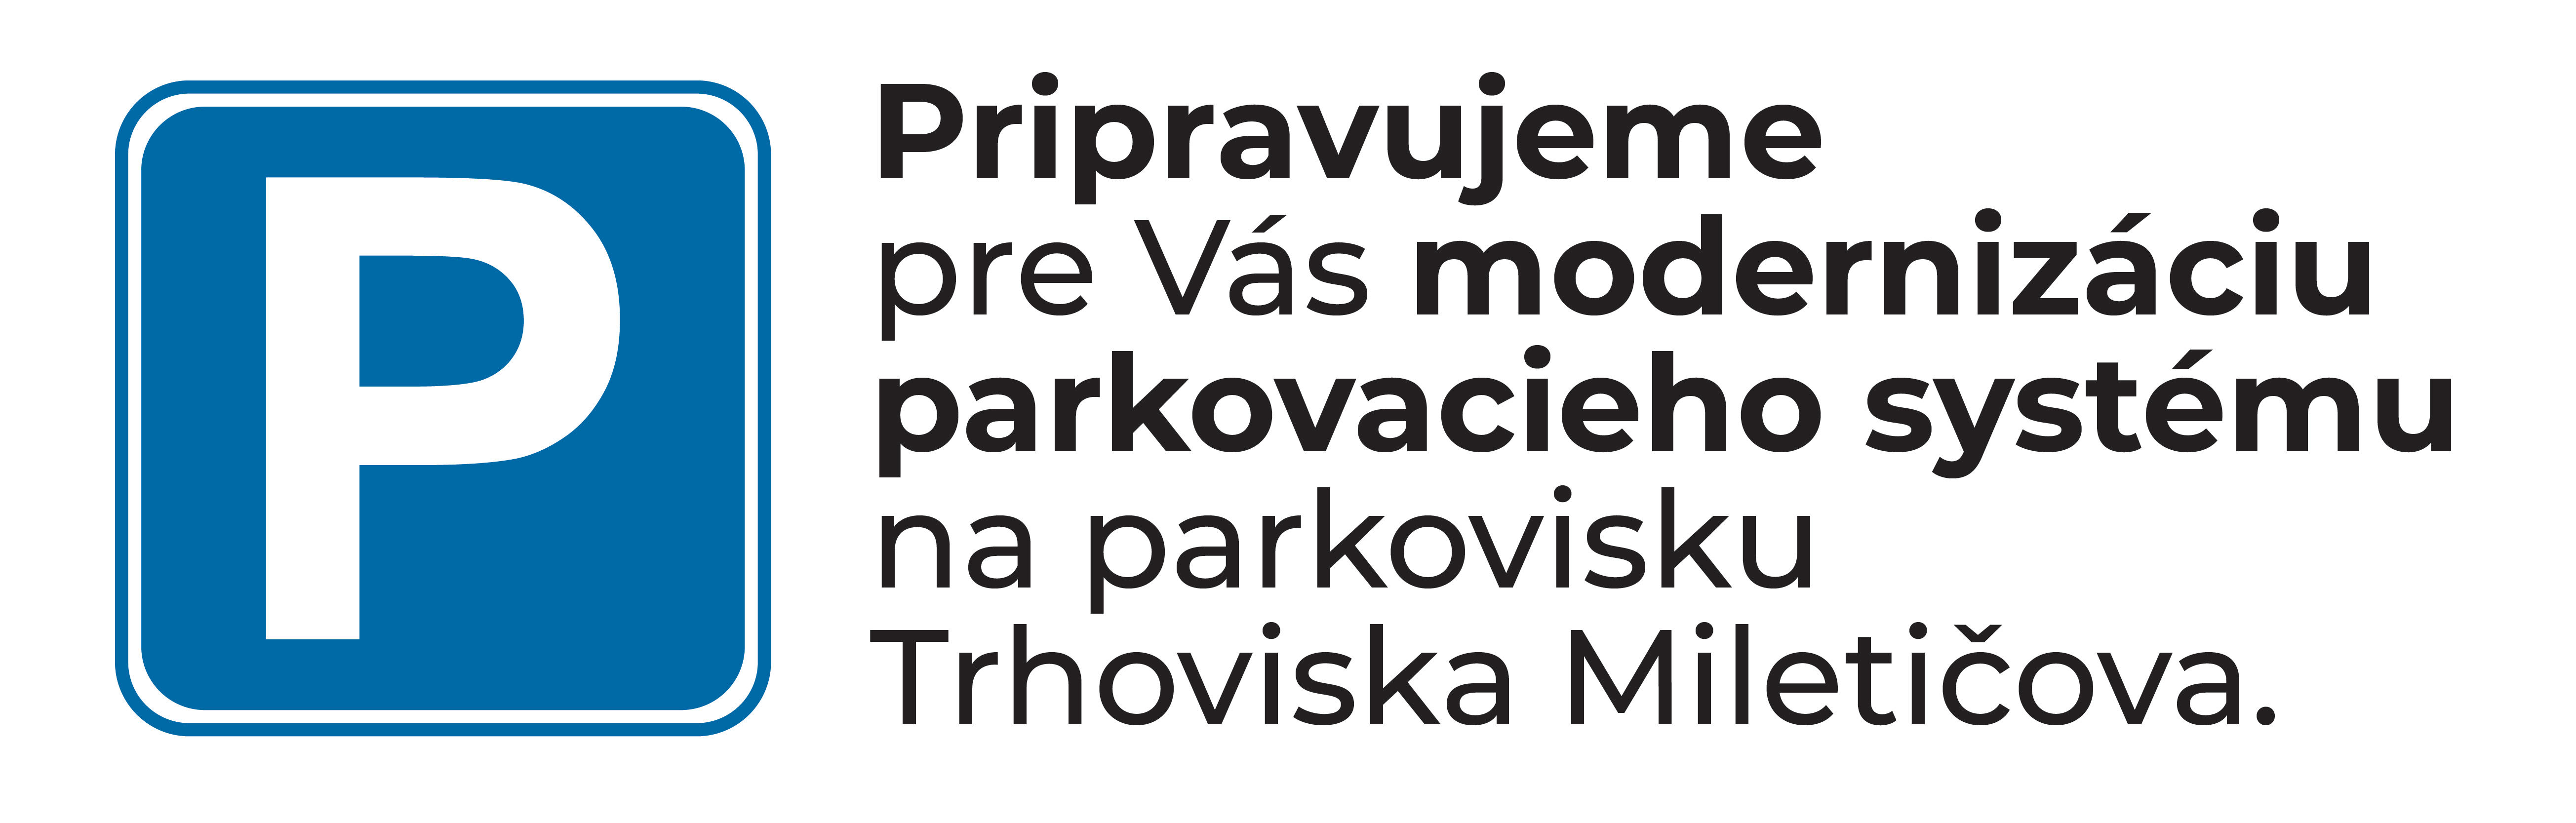 Modernizácia parkovacieho systému na parkovisku Trhoviska Miletičova